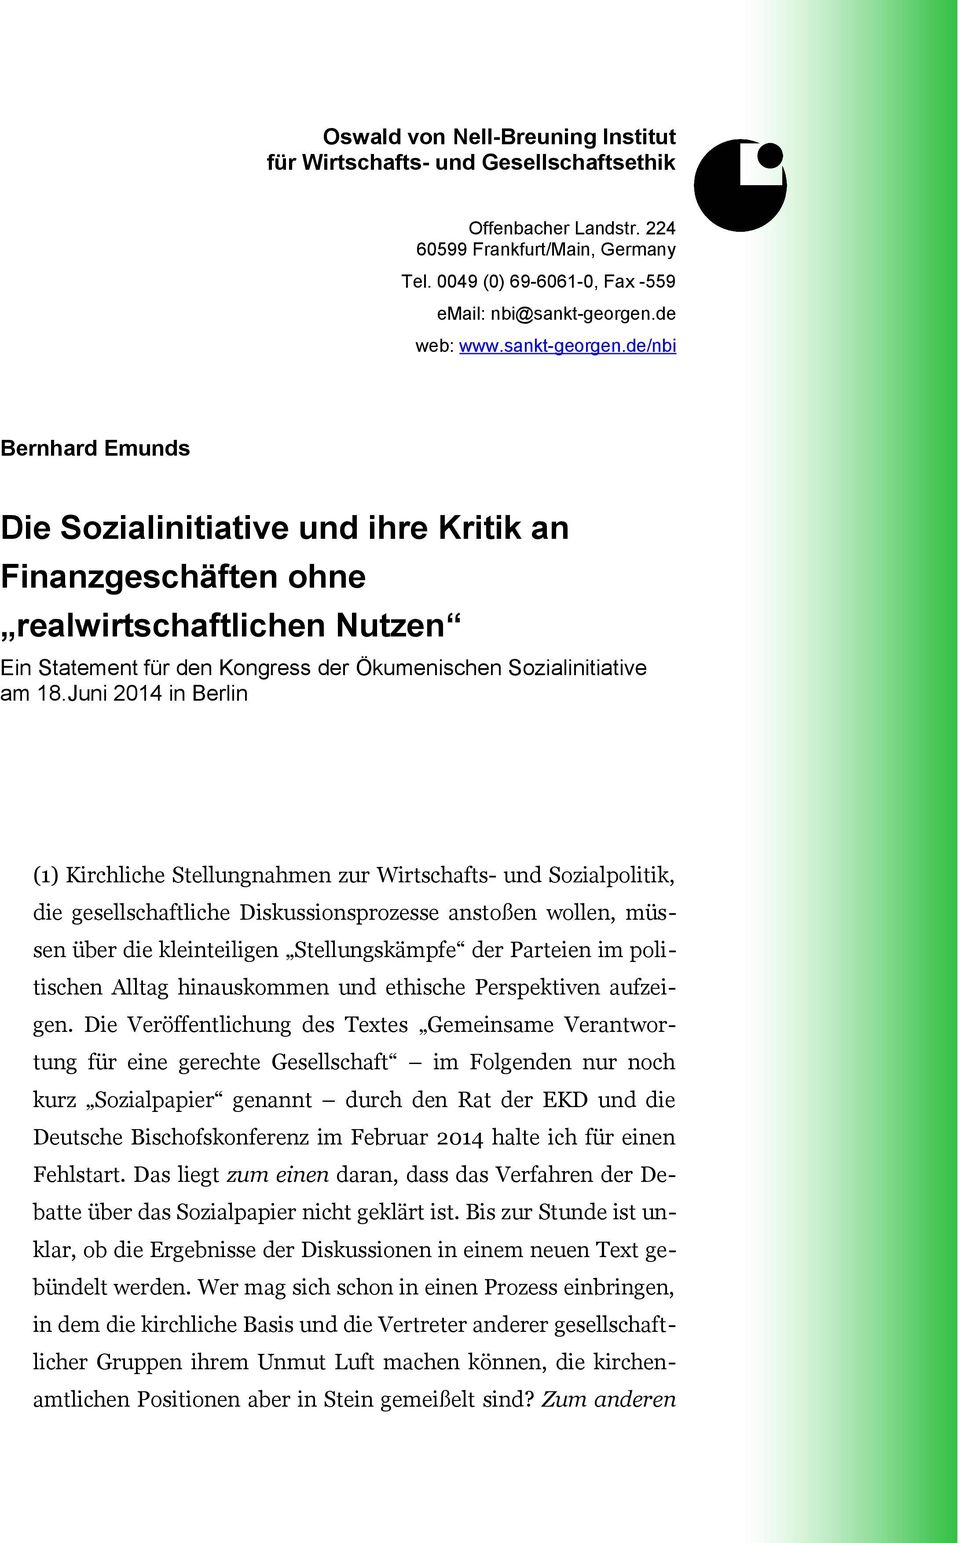 Juni 2014 in Berlin (1) Kirchliche Stellungnahmen zur Wirtschafts- und Sozialpolitik, die gesellschaftliche Diskussionsprozesse anstoßen wollen, müssen über die kleinteiligen Stellungskämpfe der